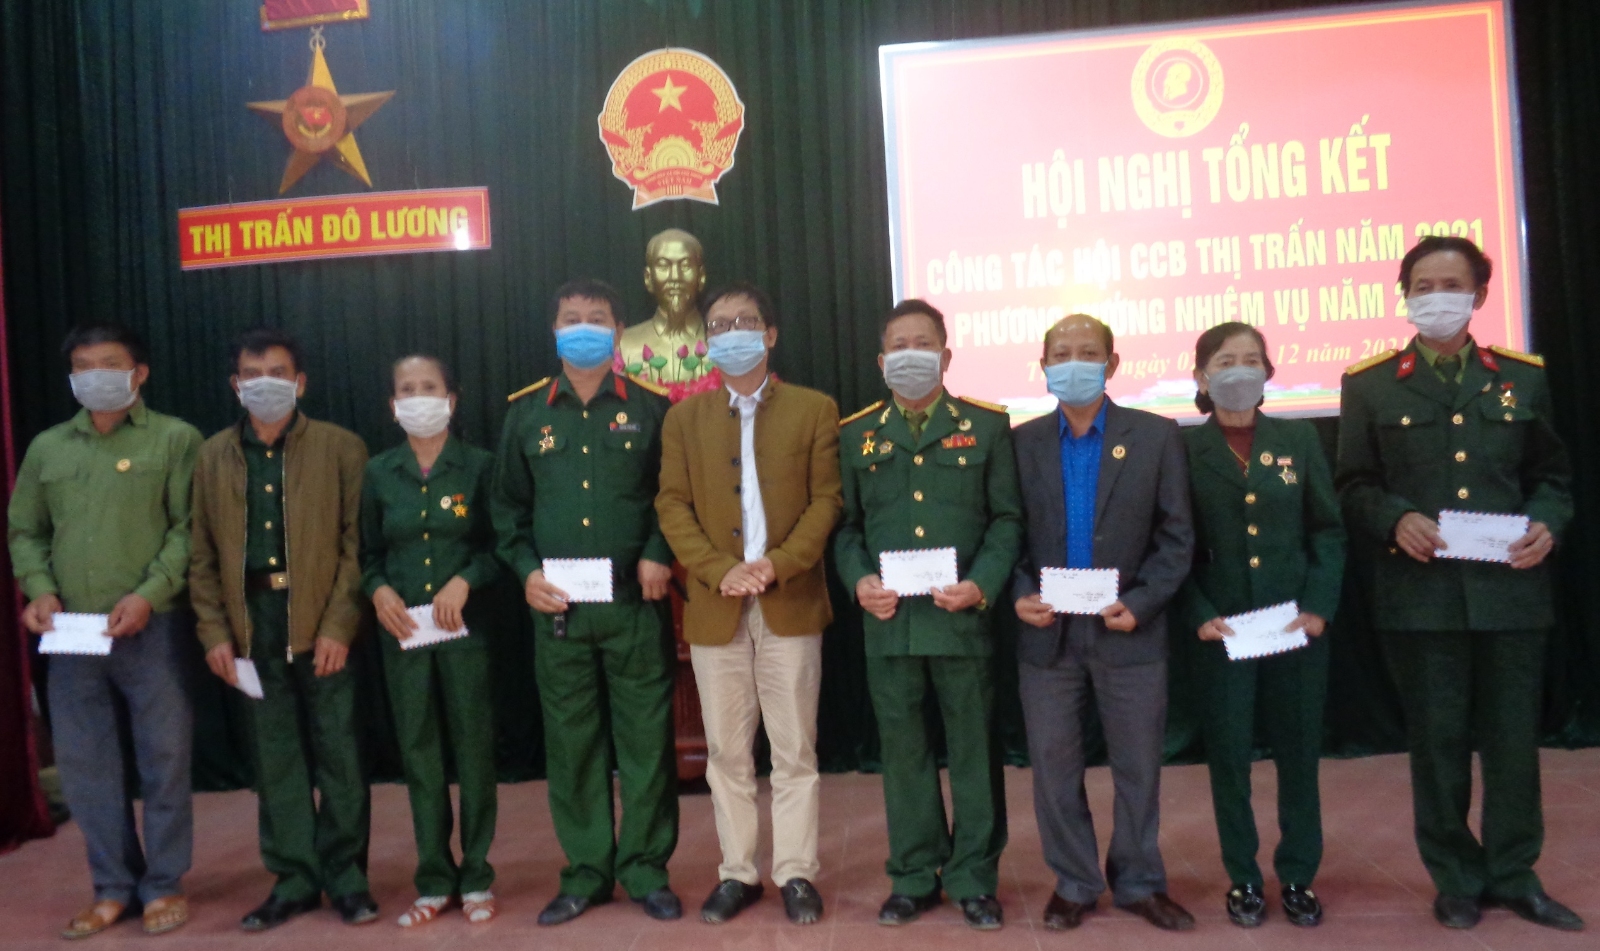 Xây dựng Hội cựu chiến binh Thị trấn Đô Lương vững mạnh xuất sắc, những bài học kinh nghiệm rút ra sau một kỳ Đại hội